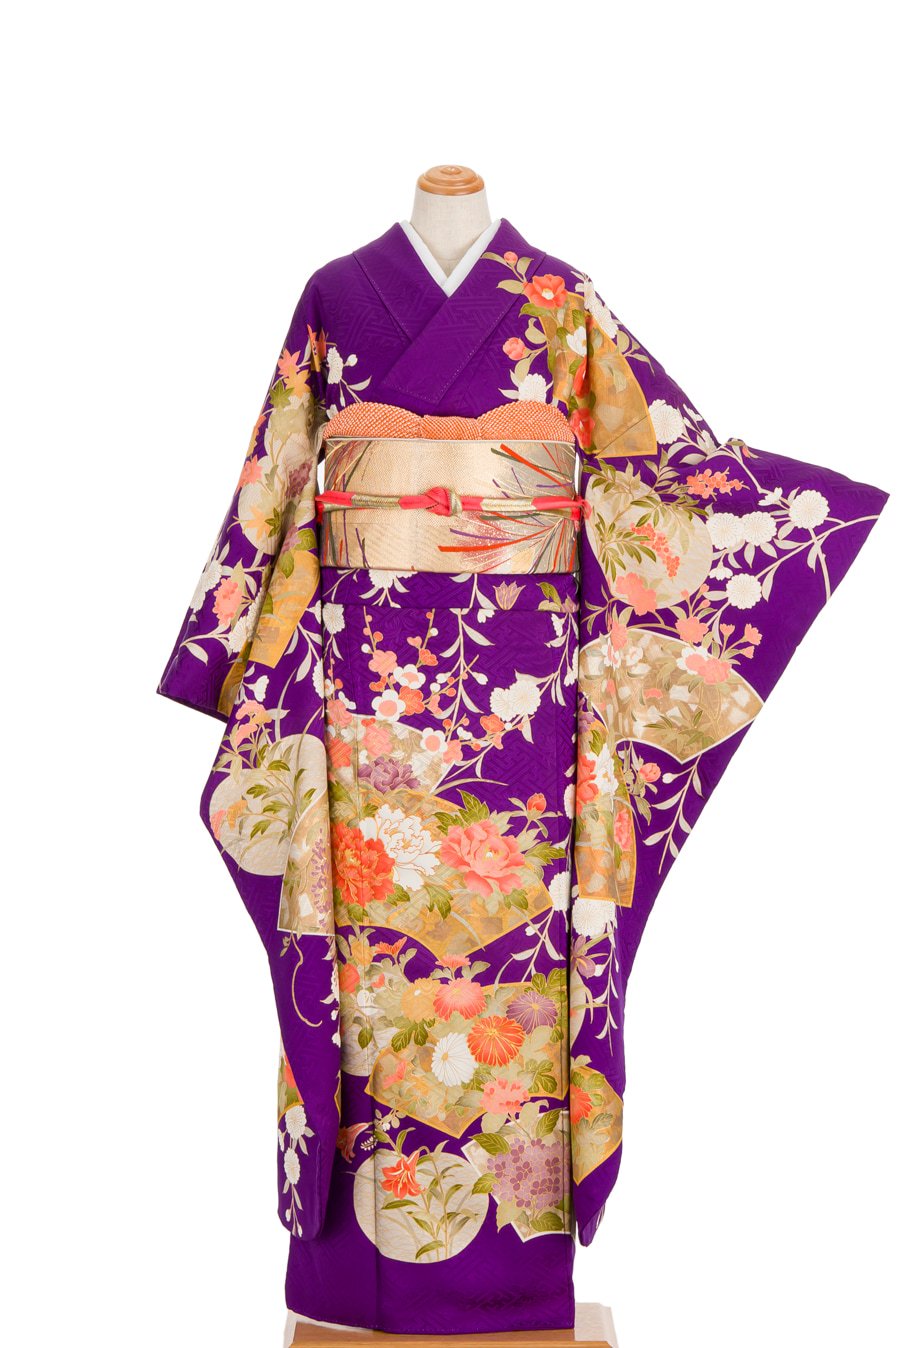 振袖 紫の地 扇面と花 - からん::アンティーク着物・リサイクル着物の通販サイト